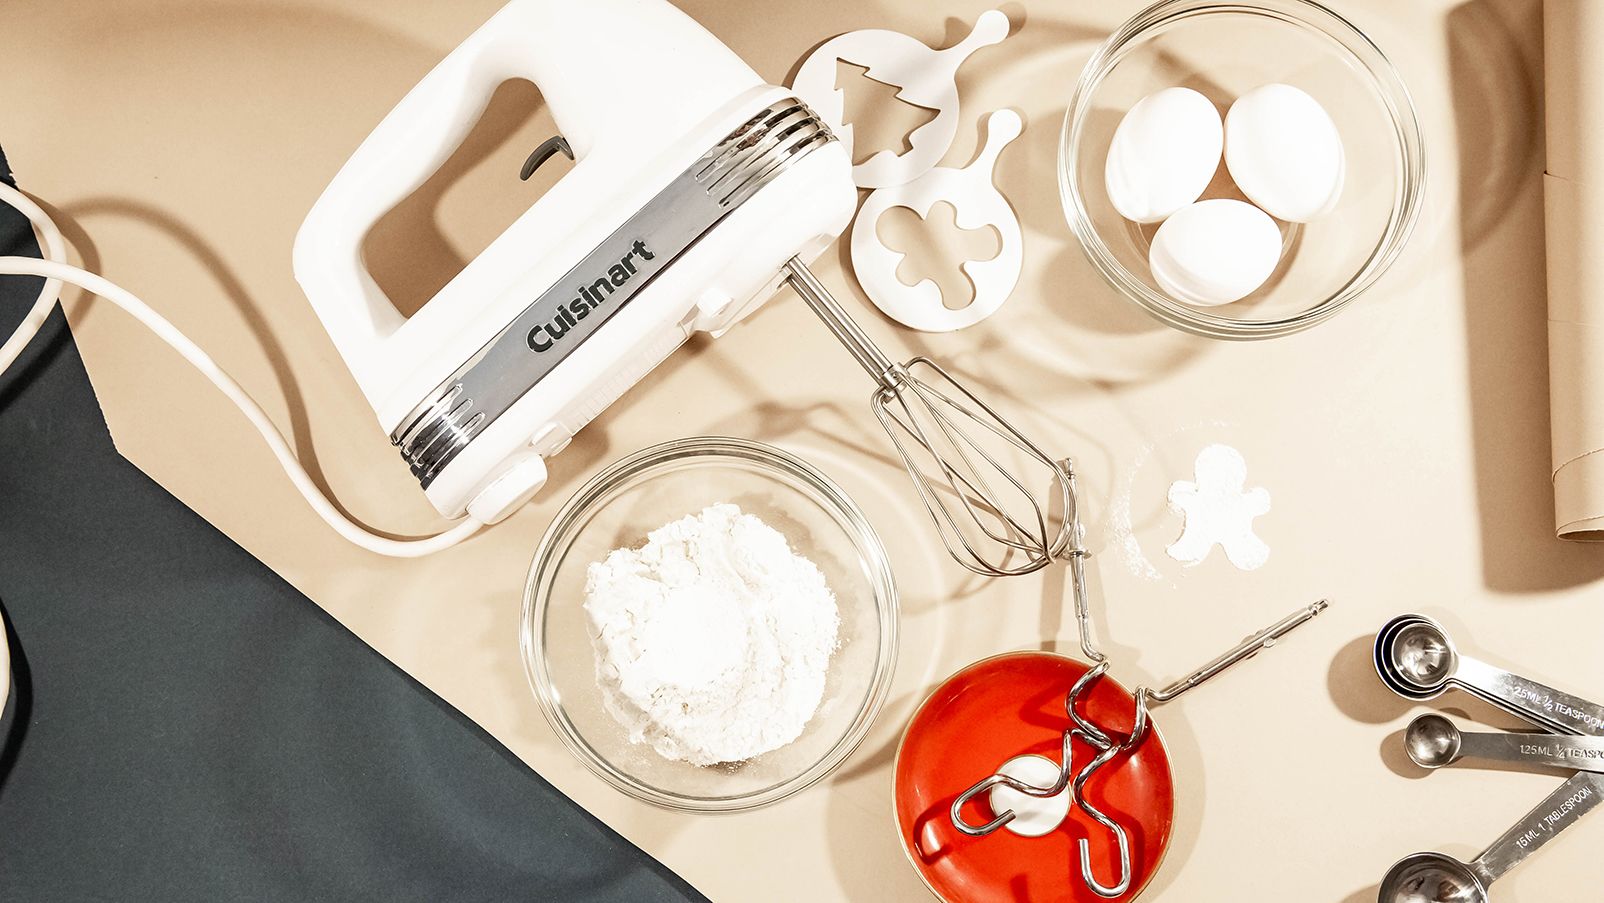 Cuisinart hand mixer sale: 20% off